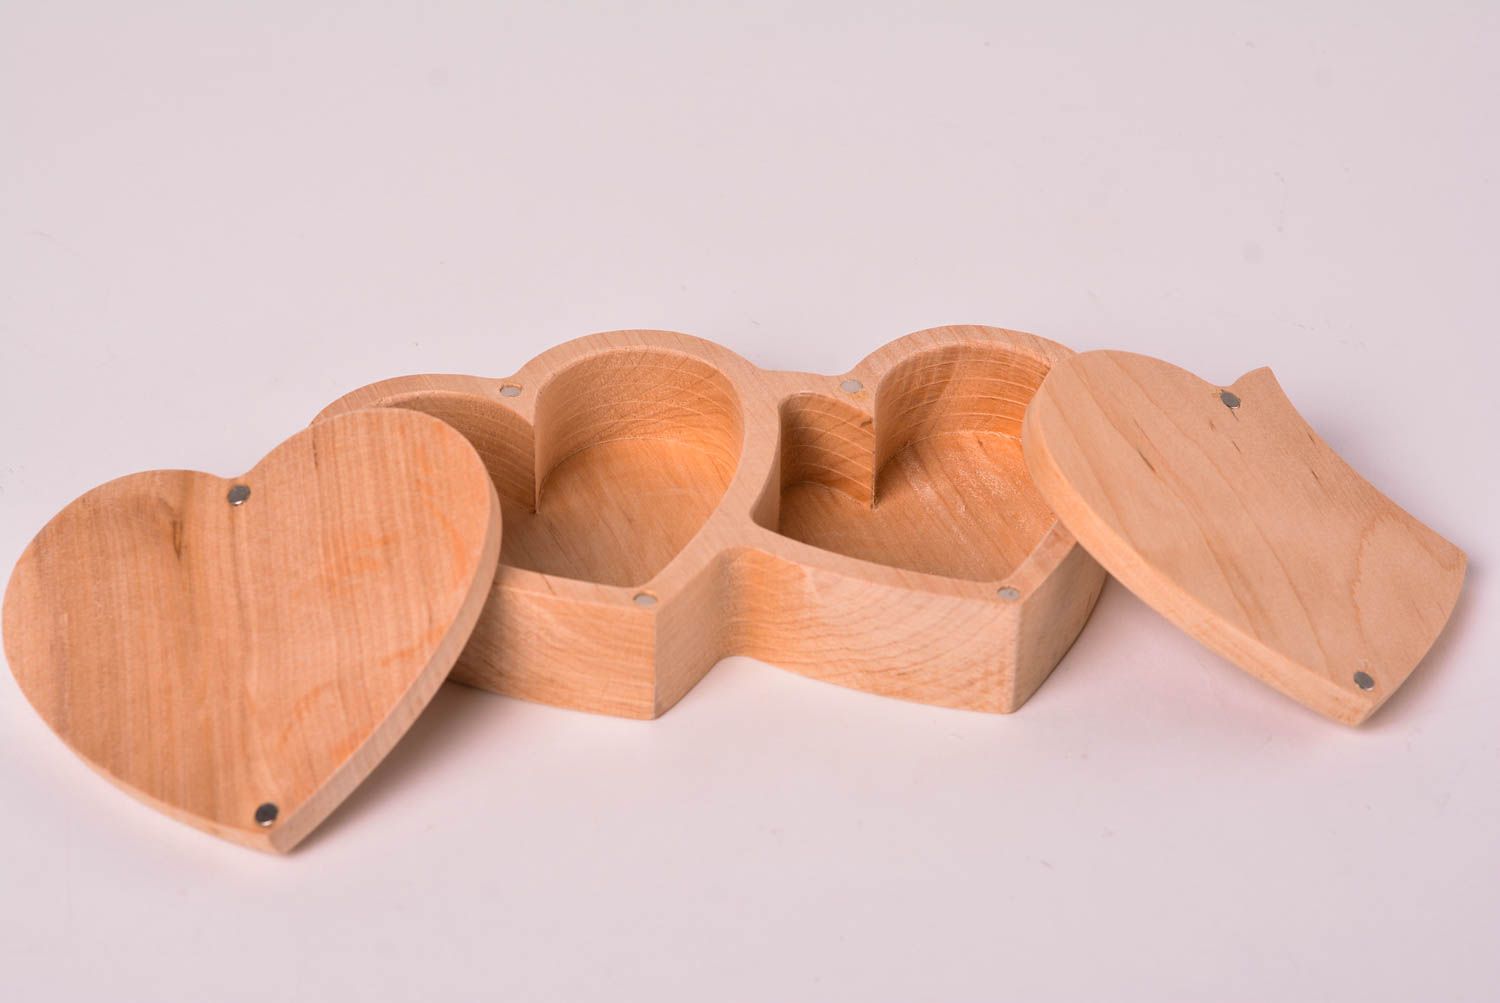 Stylish handmade wooden box wood craft ideas jewelry box design small gifts photo 5